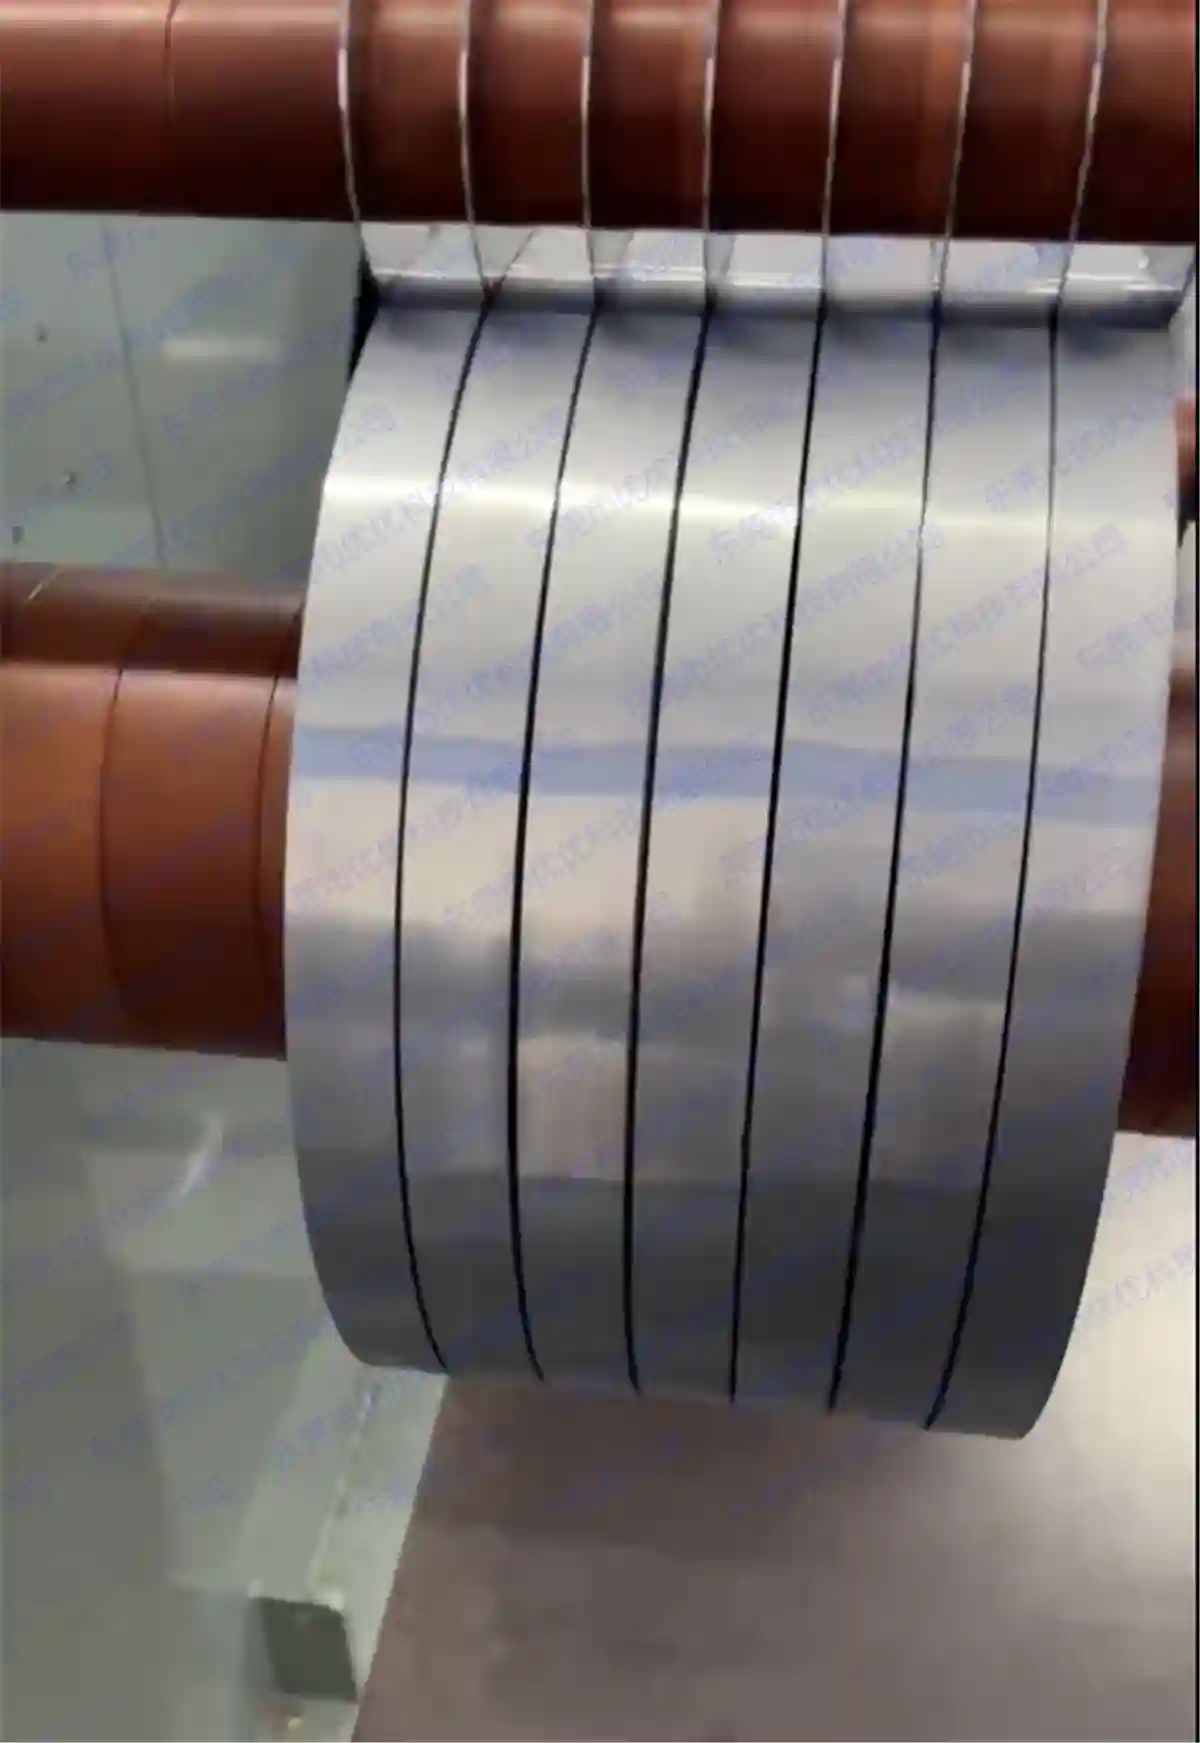 Ultracienka obróbka wzdłużna i krojenie stali krzemowej (minimalna szerokość 5 mm)